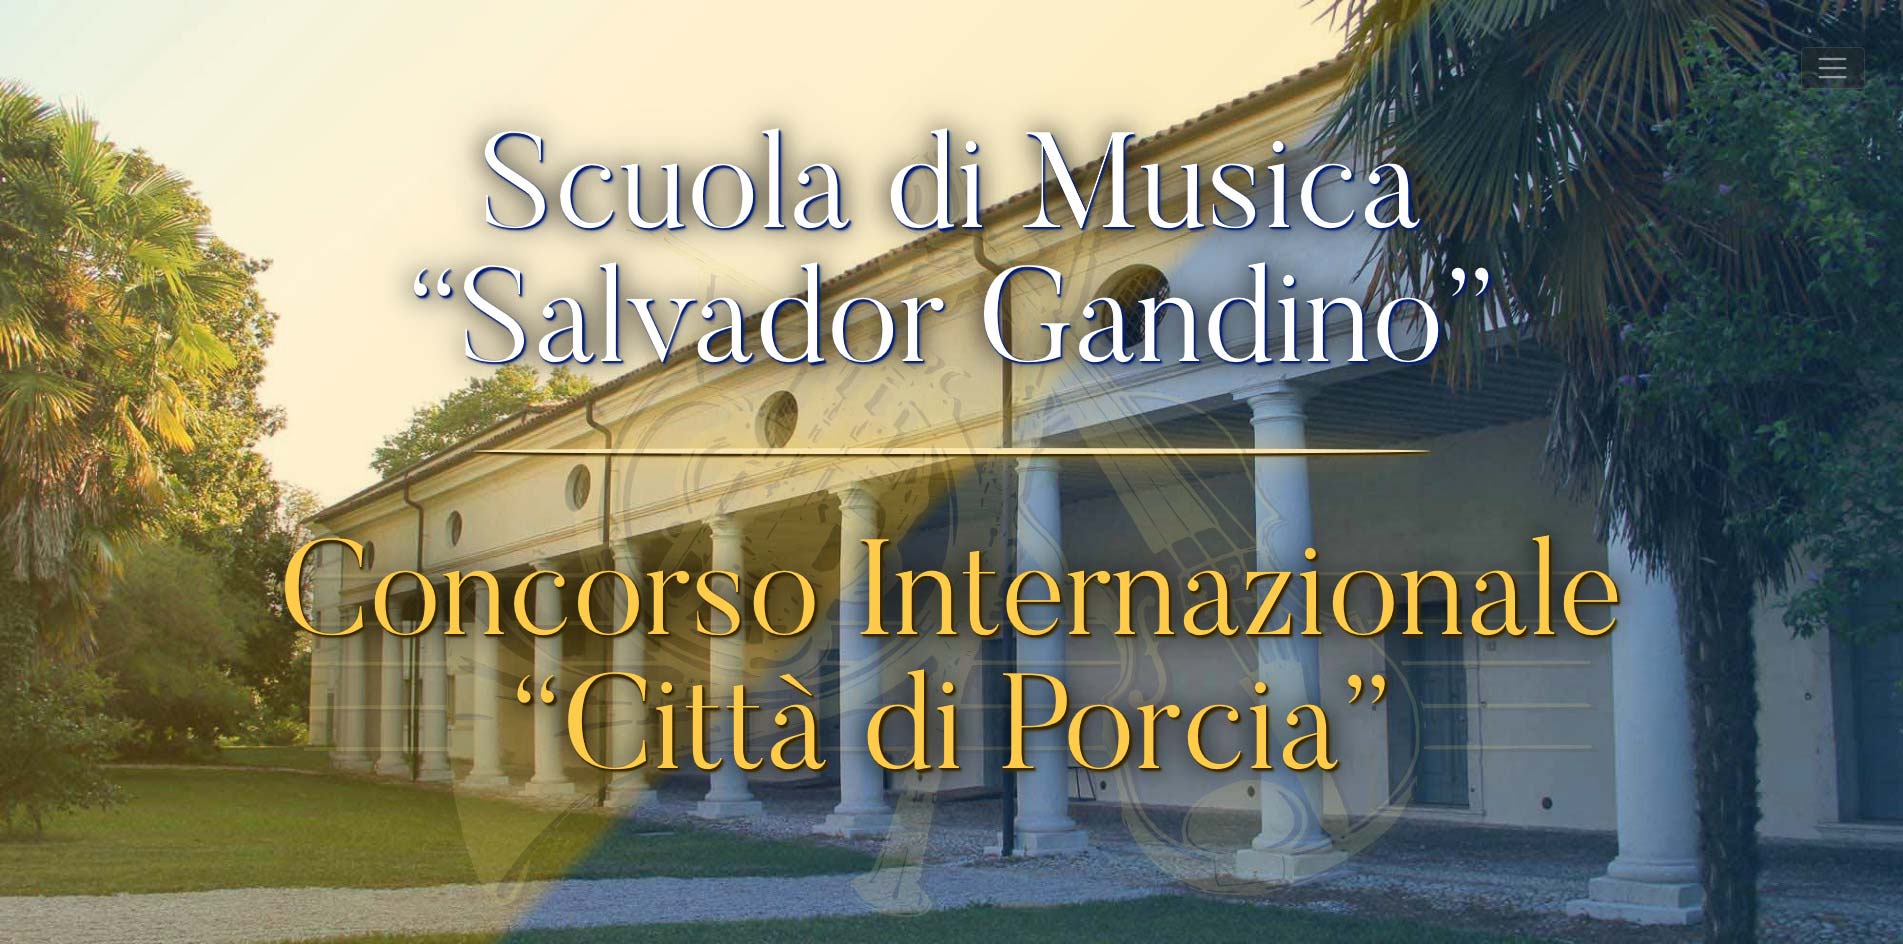 Scuola di Musica Salvador Gandino & Concorso Internazionale Città di Porcia